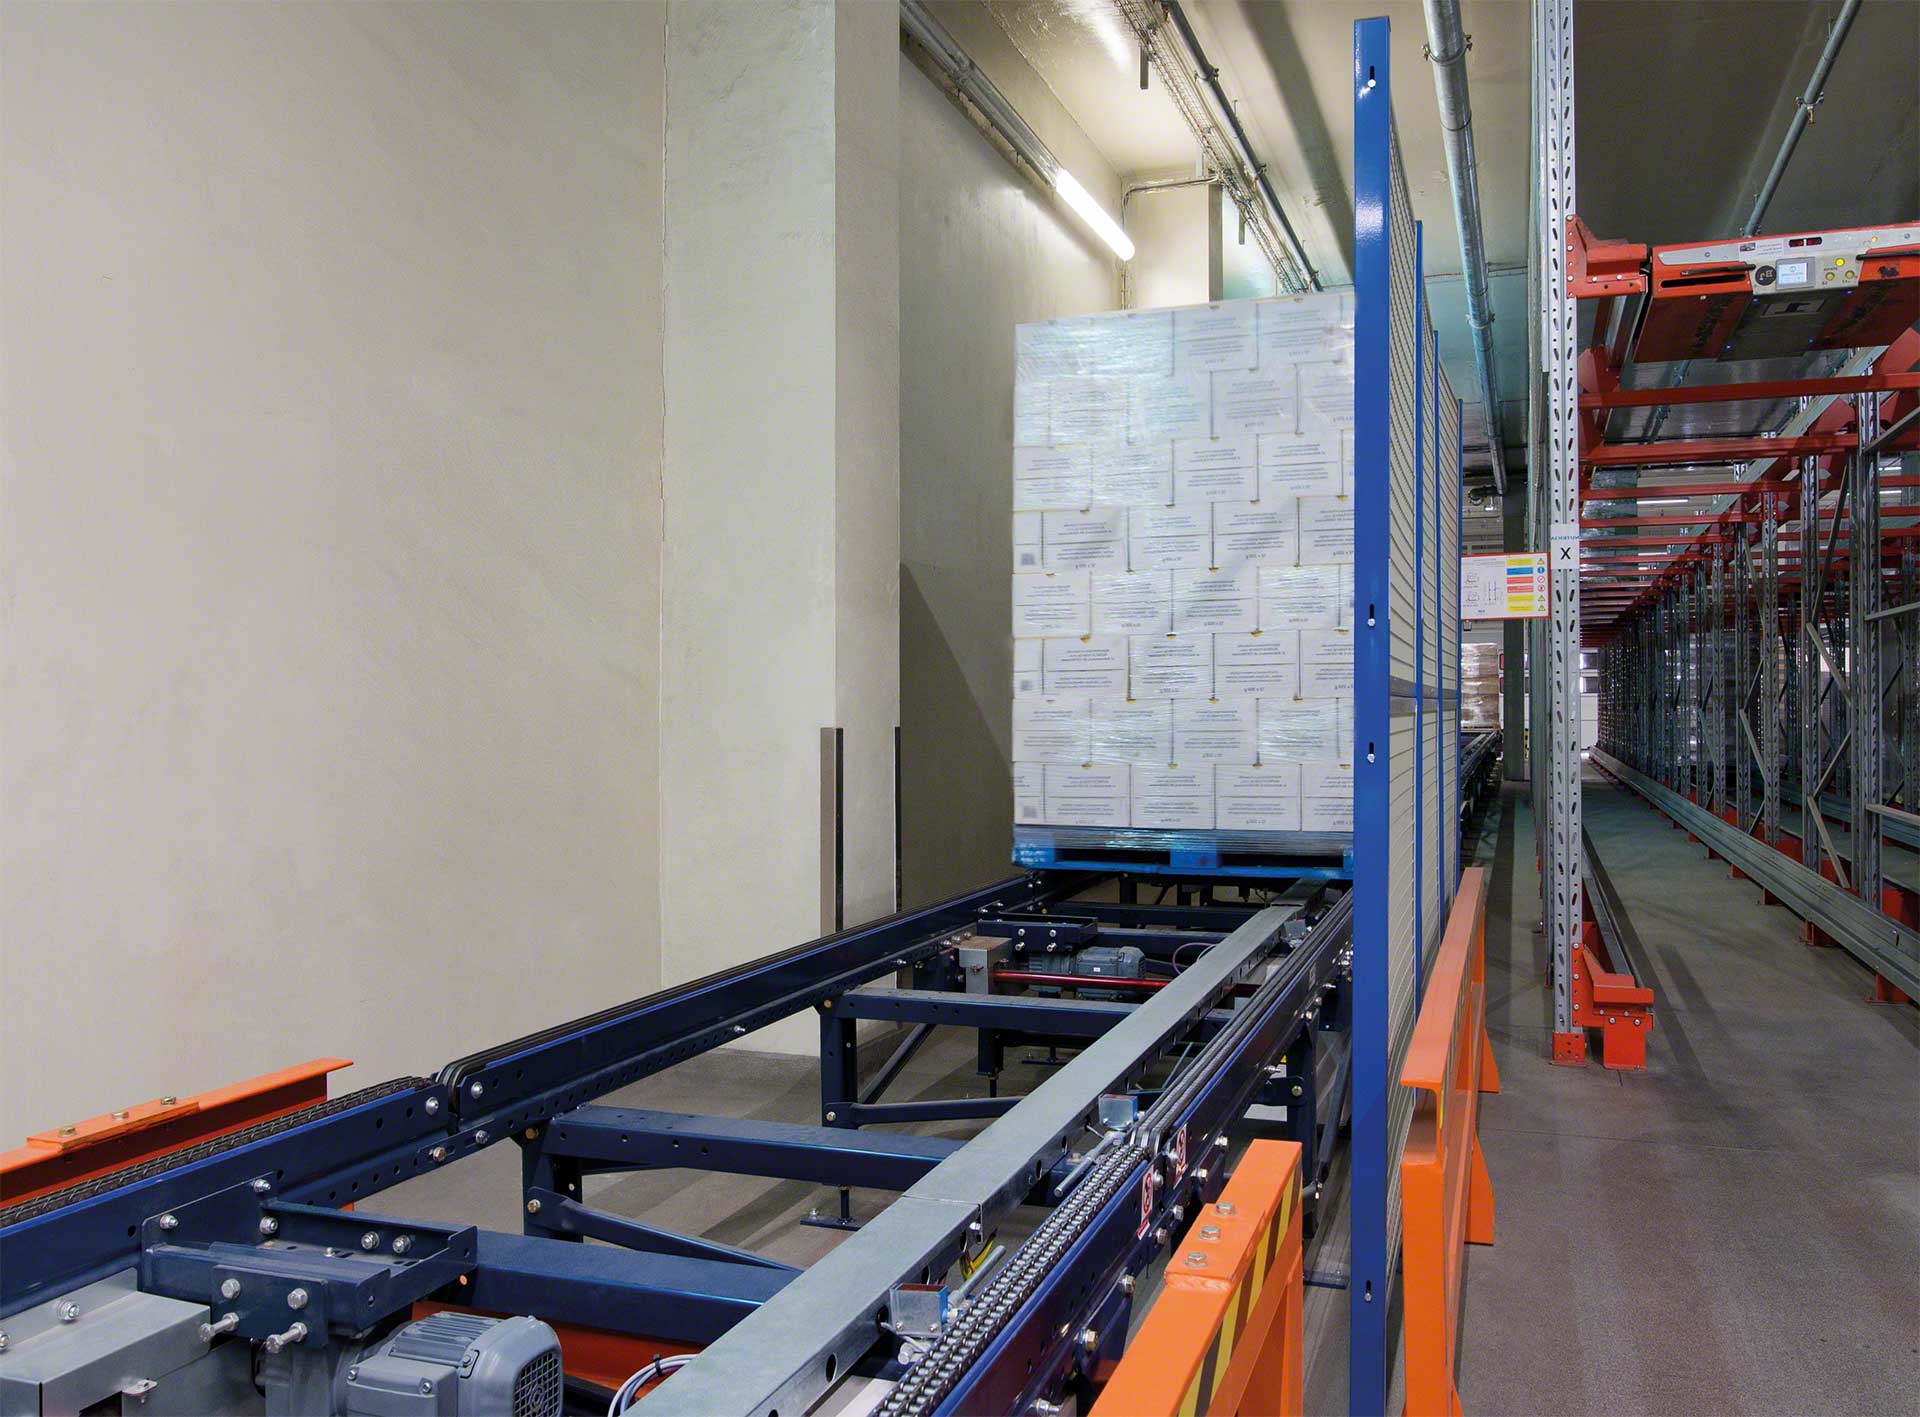 Het vervoer van laadeenheden tussen magazijnen of productievestigingen maakt deel uit van de interne logistiek van de onderneming